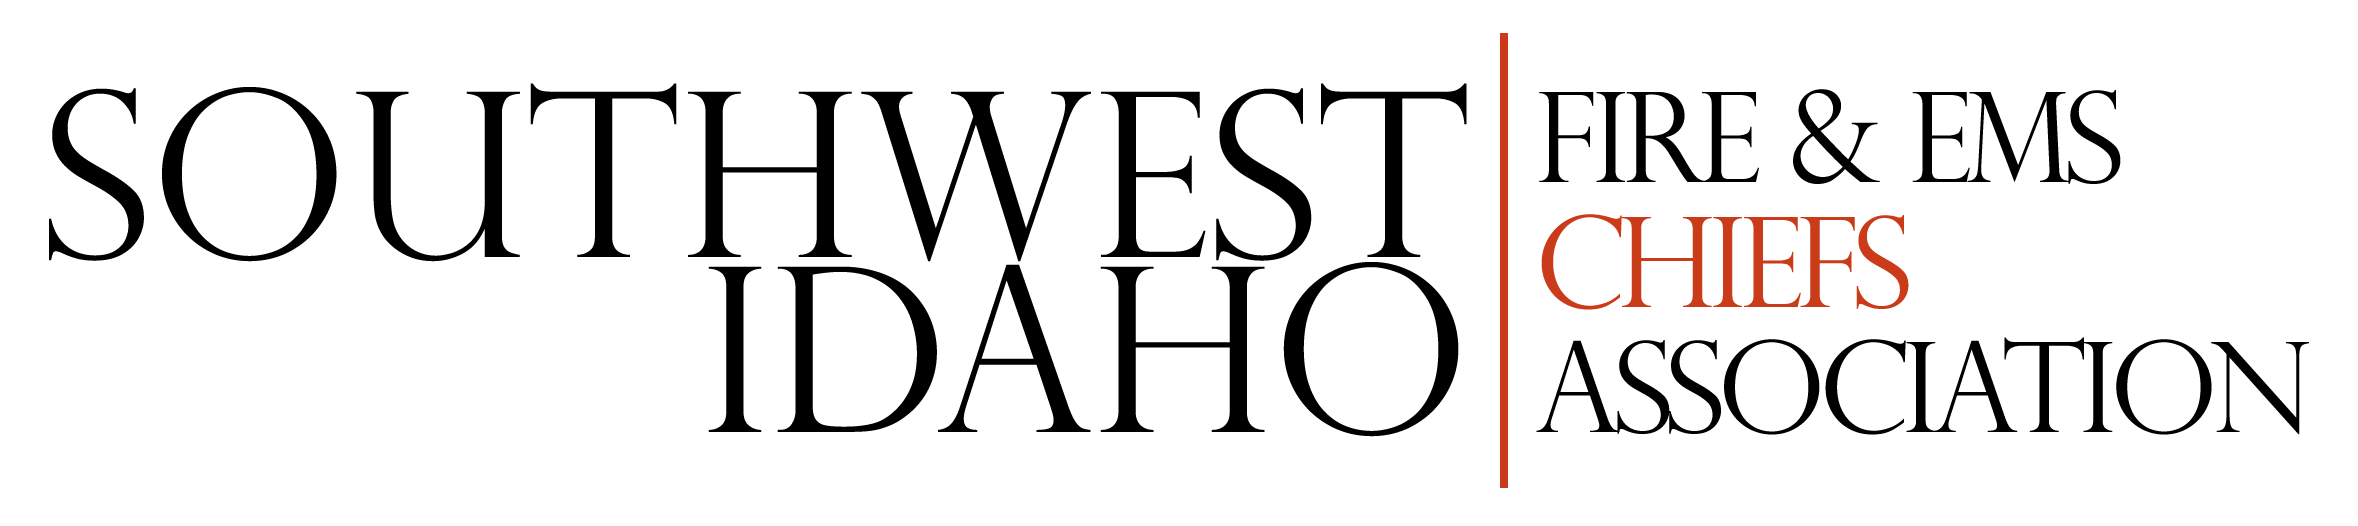 SW Idaho Fire Chiefs Association